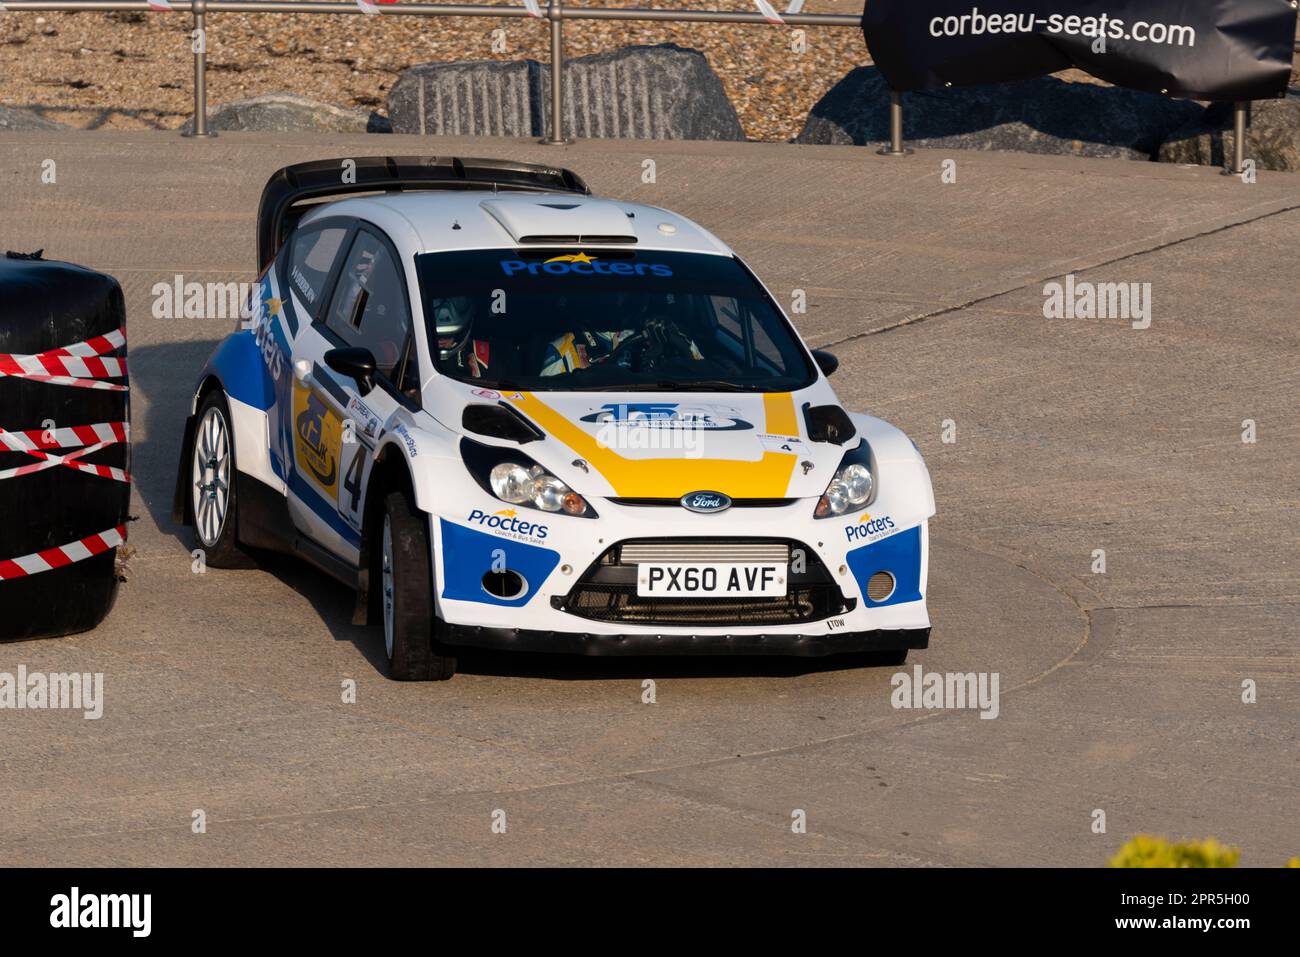 Kevin Proctor fährt einen Ford Fiesta WRC, der an der Corbeau Seats Rallye am Meer in Clacton on Sea, Essex, Großbritannien, teilnimmt. Mitfahrer Tom Woodburn Stockfoto